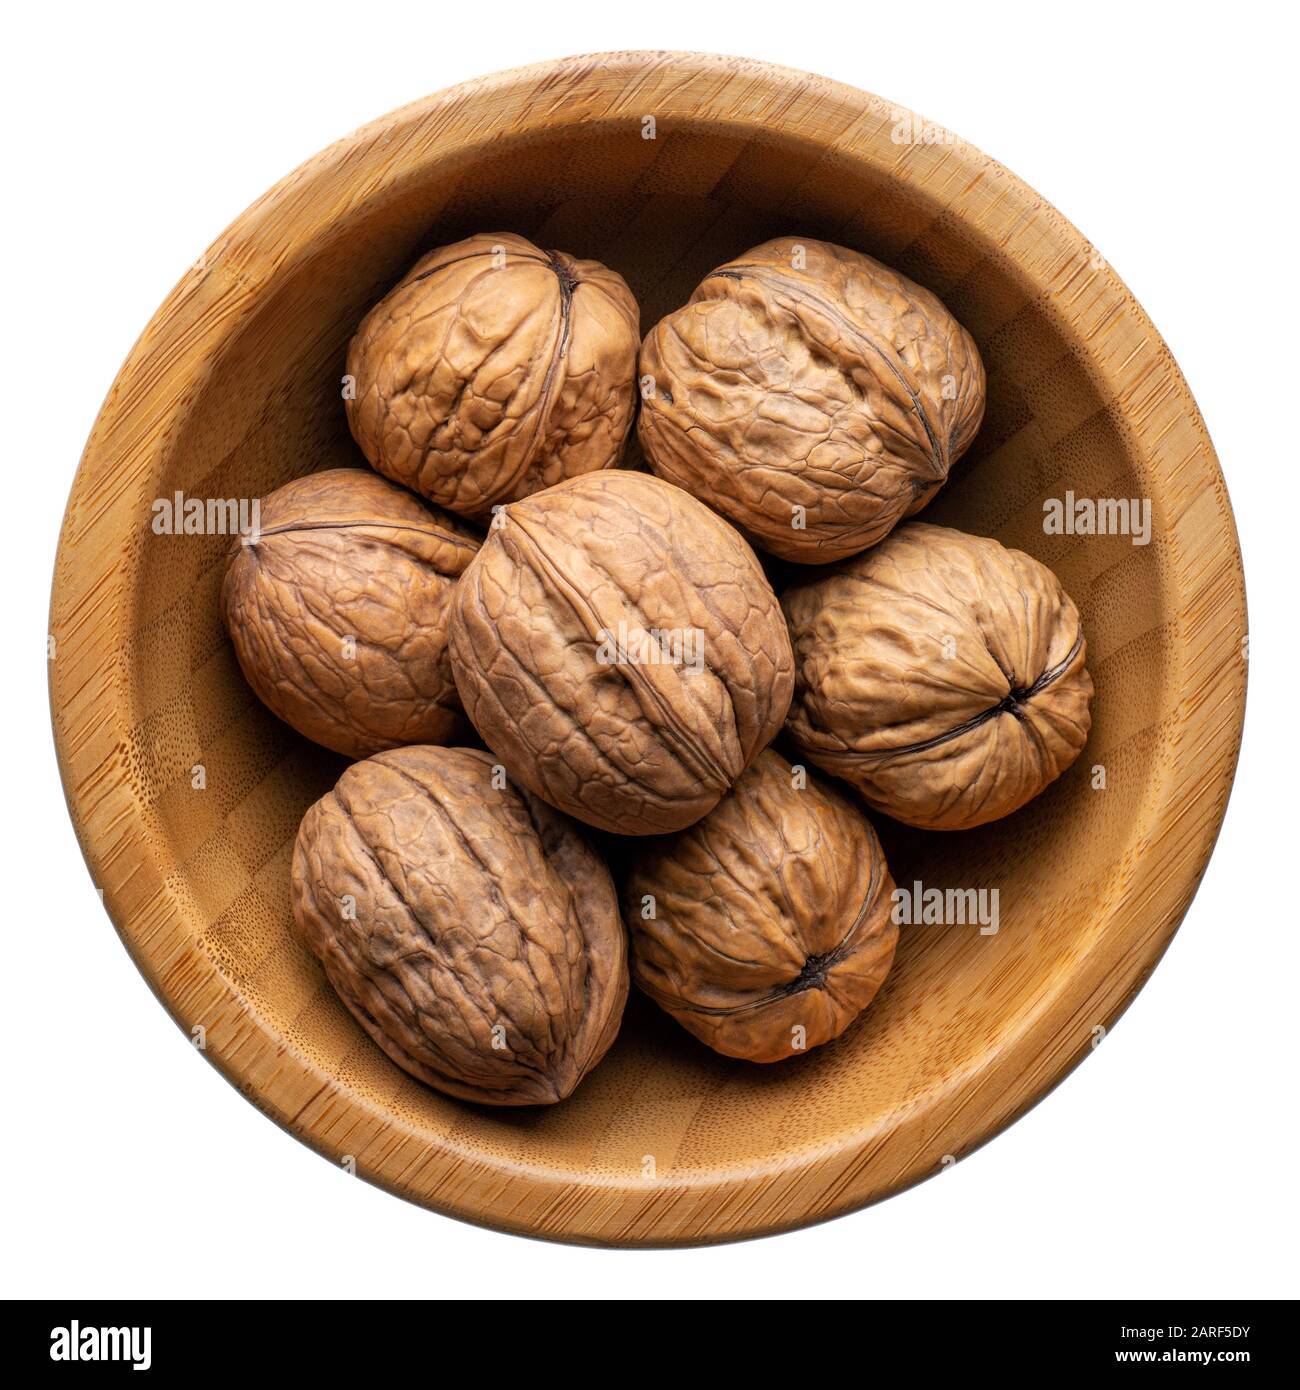 Cibo e bevande: Gruppo di noci non sbucciate in una ciotola rotonda di legno, isolato su sfondo bianco Foto Stock